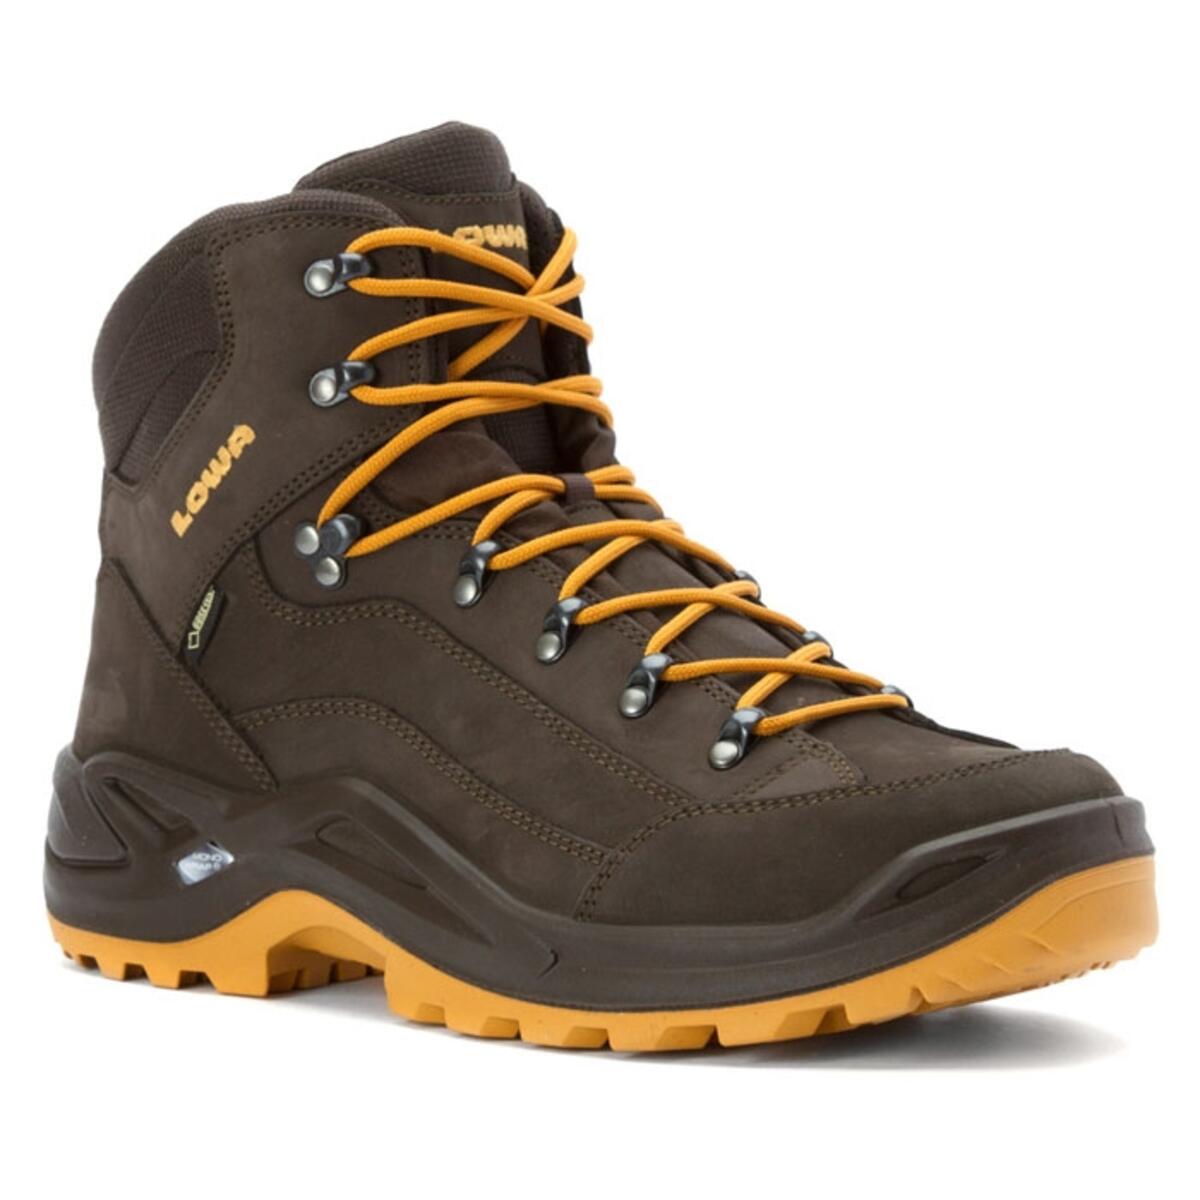 Lowa Men's Renegade GTX Mid Hiking Boots - Sun & Ski Sports